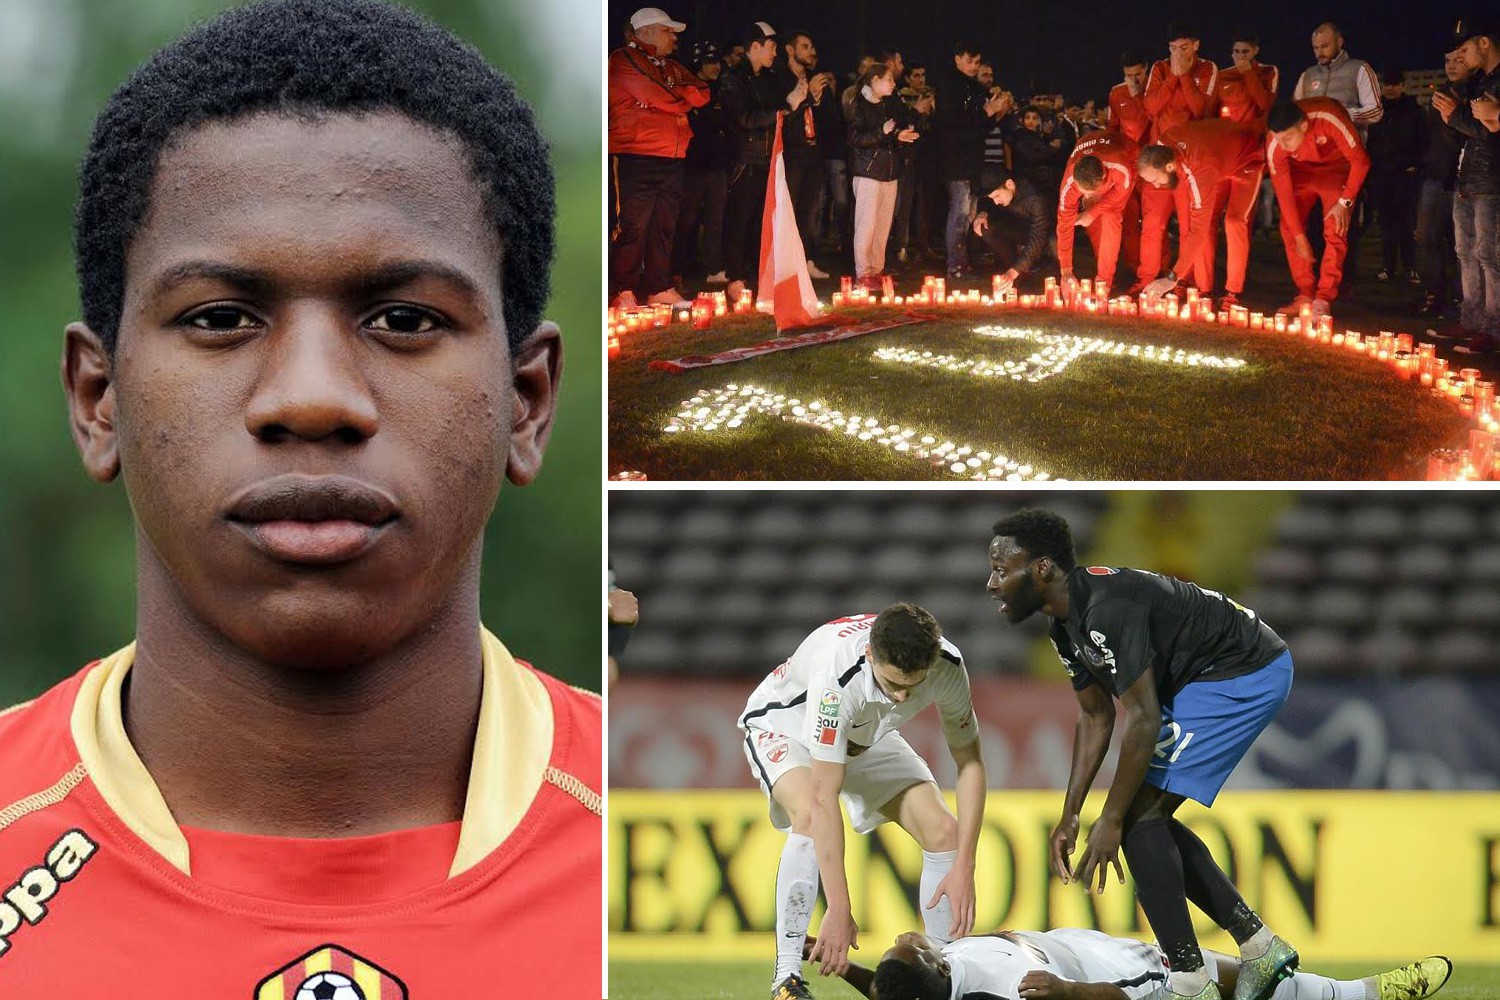 Tuyển thủ người Cameroon và của CLB Dinamo Bucharest, Patrick Ekeng vừa tử vong ngay trên sân vì đau tim.